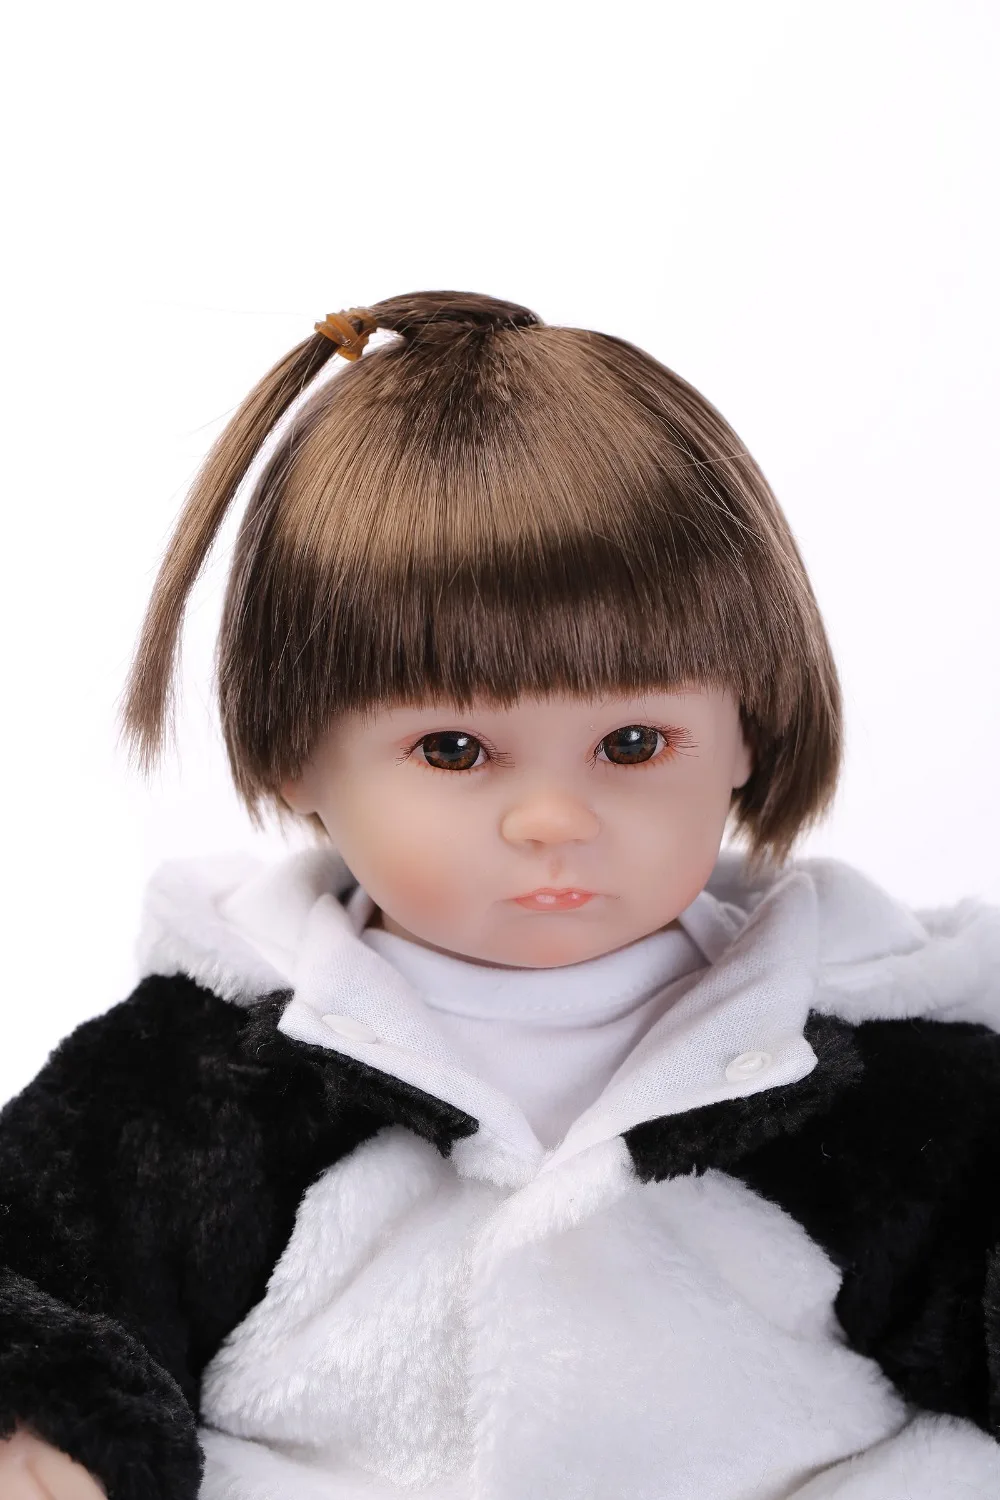 Npkколлекция 17 дюймов Реалистичная кукла boneca reborn panda, Кукла reborn baby, мягкая силиконовая виниловая кукла с реальным прикосновением, милая кукла для новорожденного